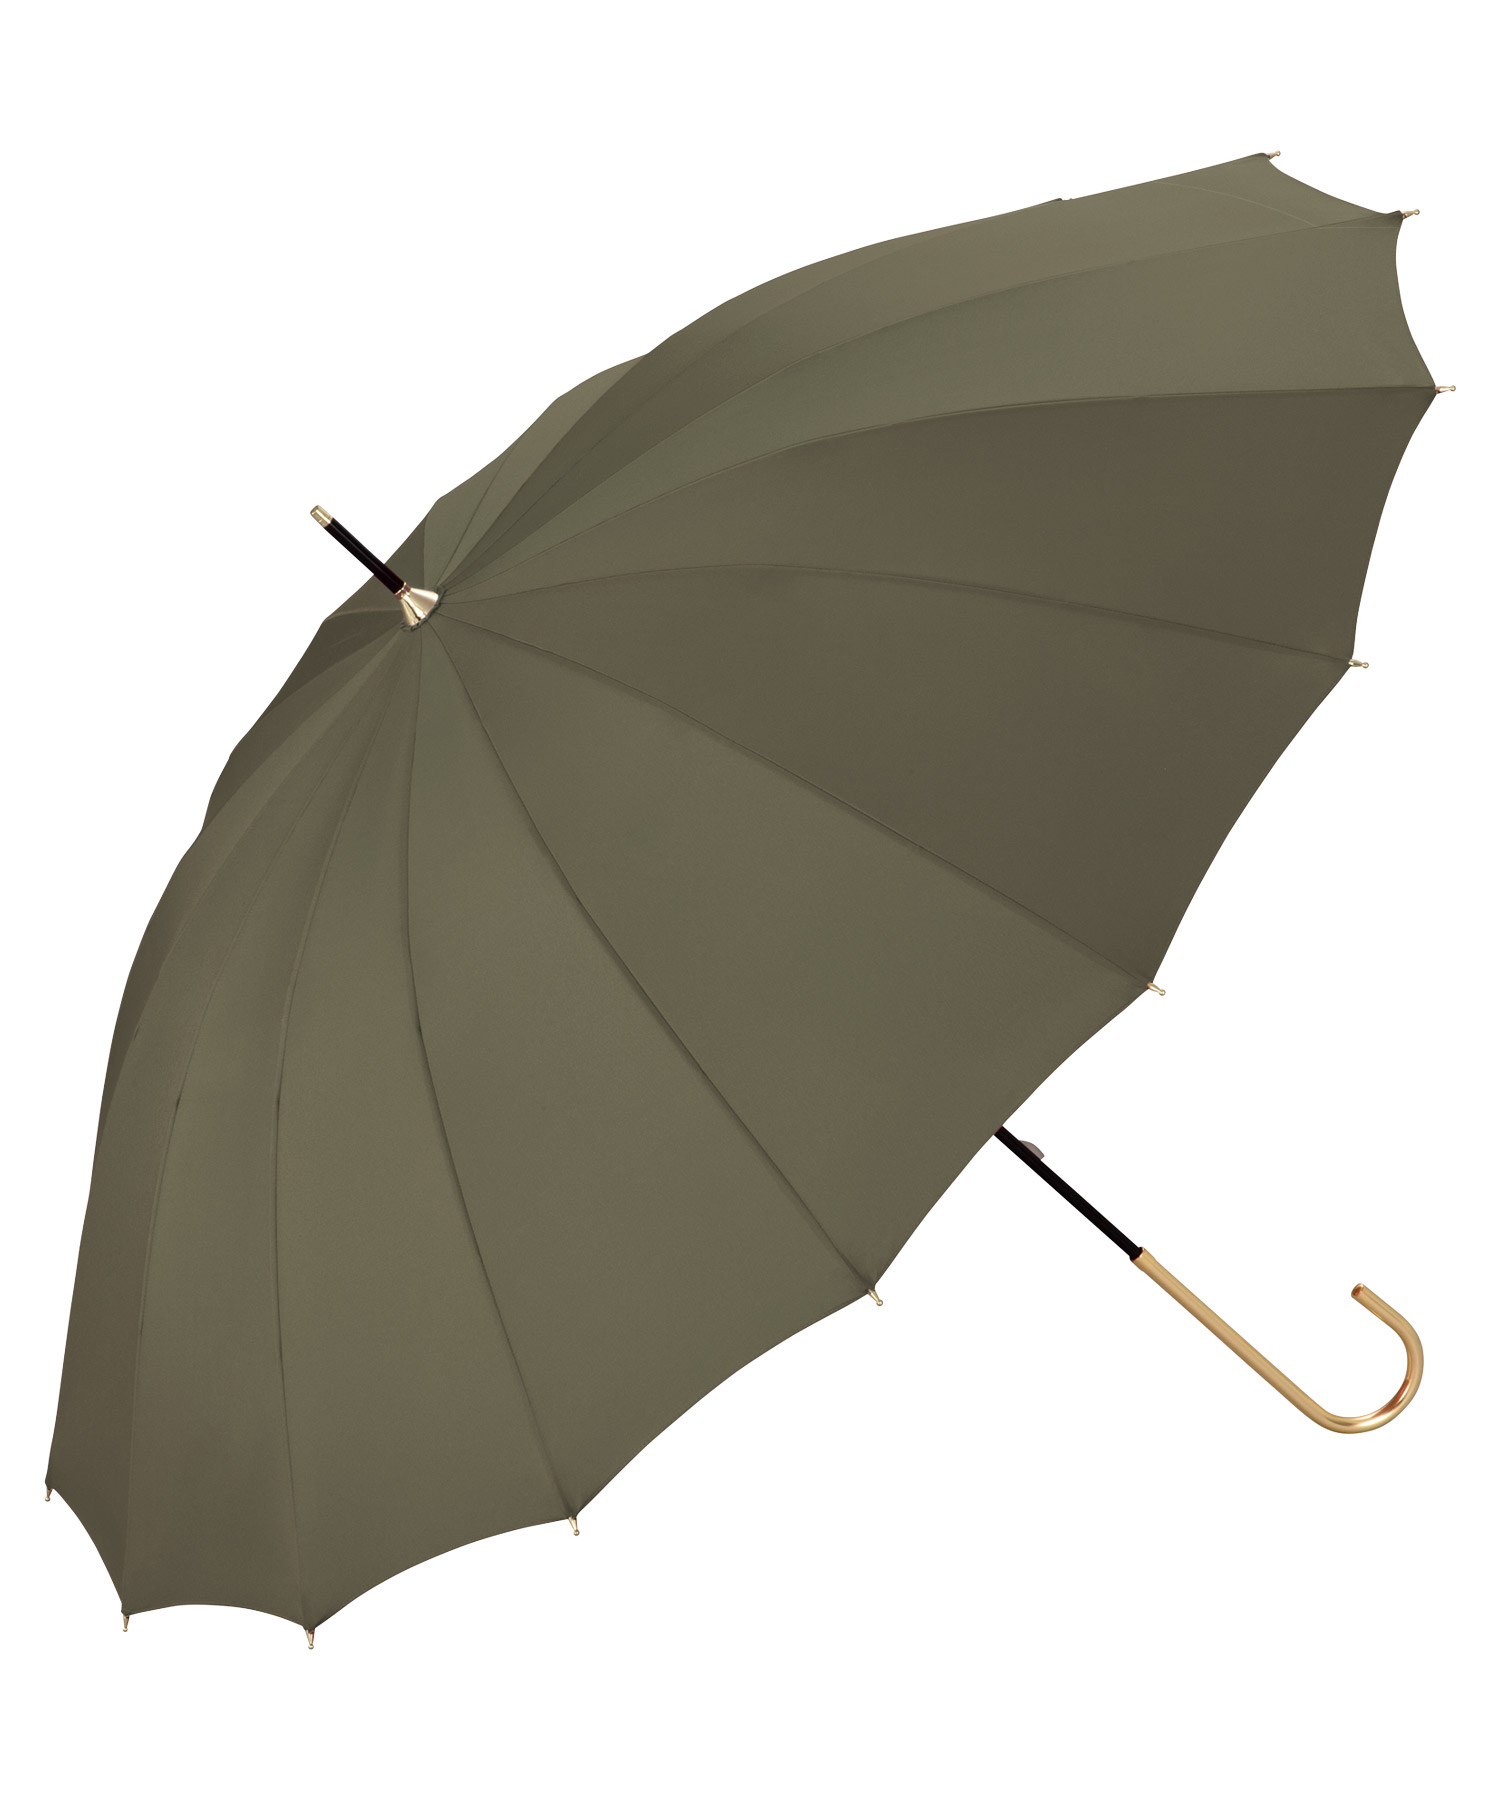 【色: ベージュ】202Wpc. 雨傘 16本骨ソリッド ベージュ 55cm 晴